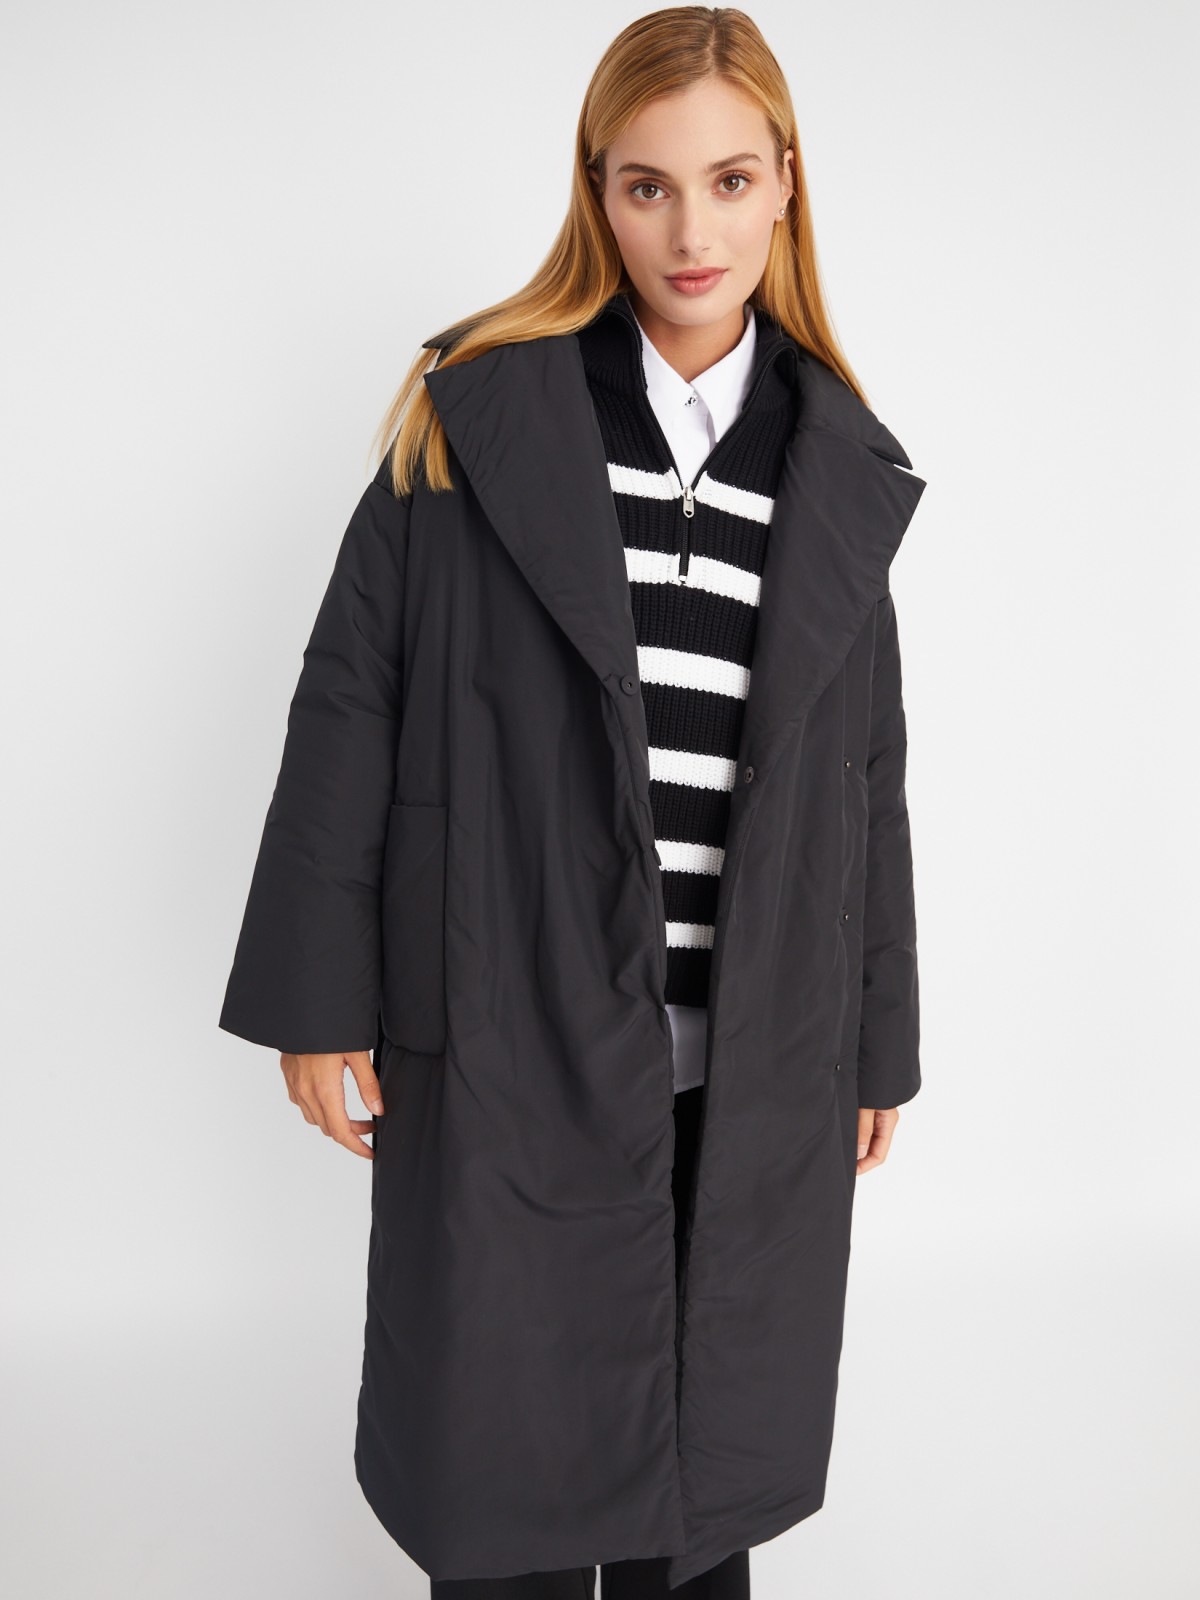 Тёплое пальто оверсайз силуэта на синтепоне с отложным воротником и поясом zolla 023335297244, цвет черный, размер L - фото 1